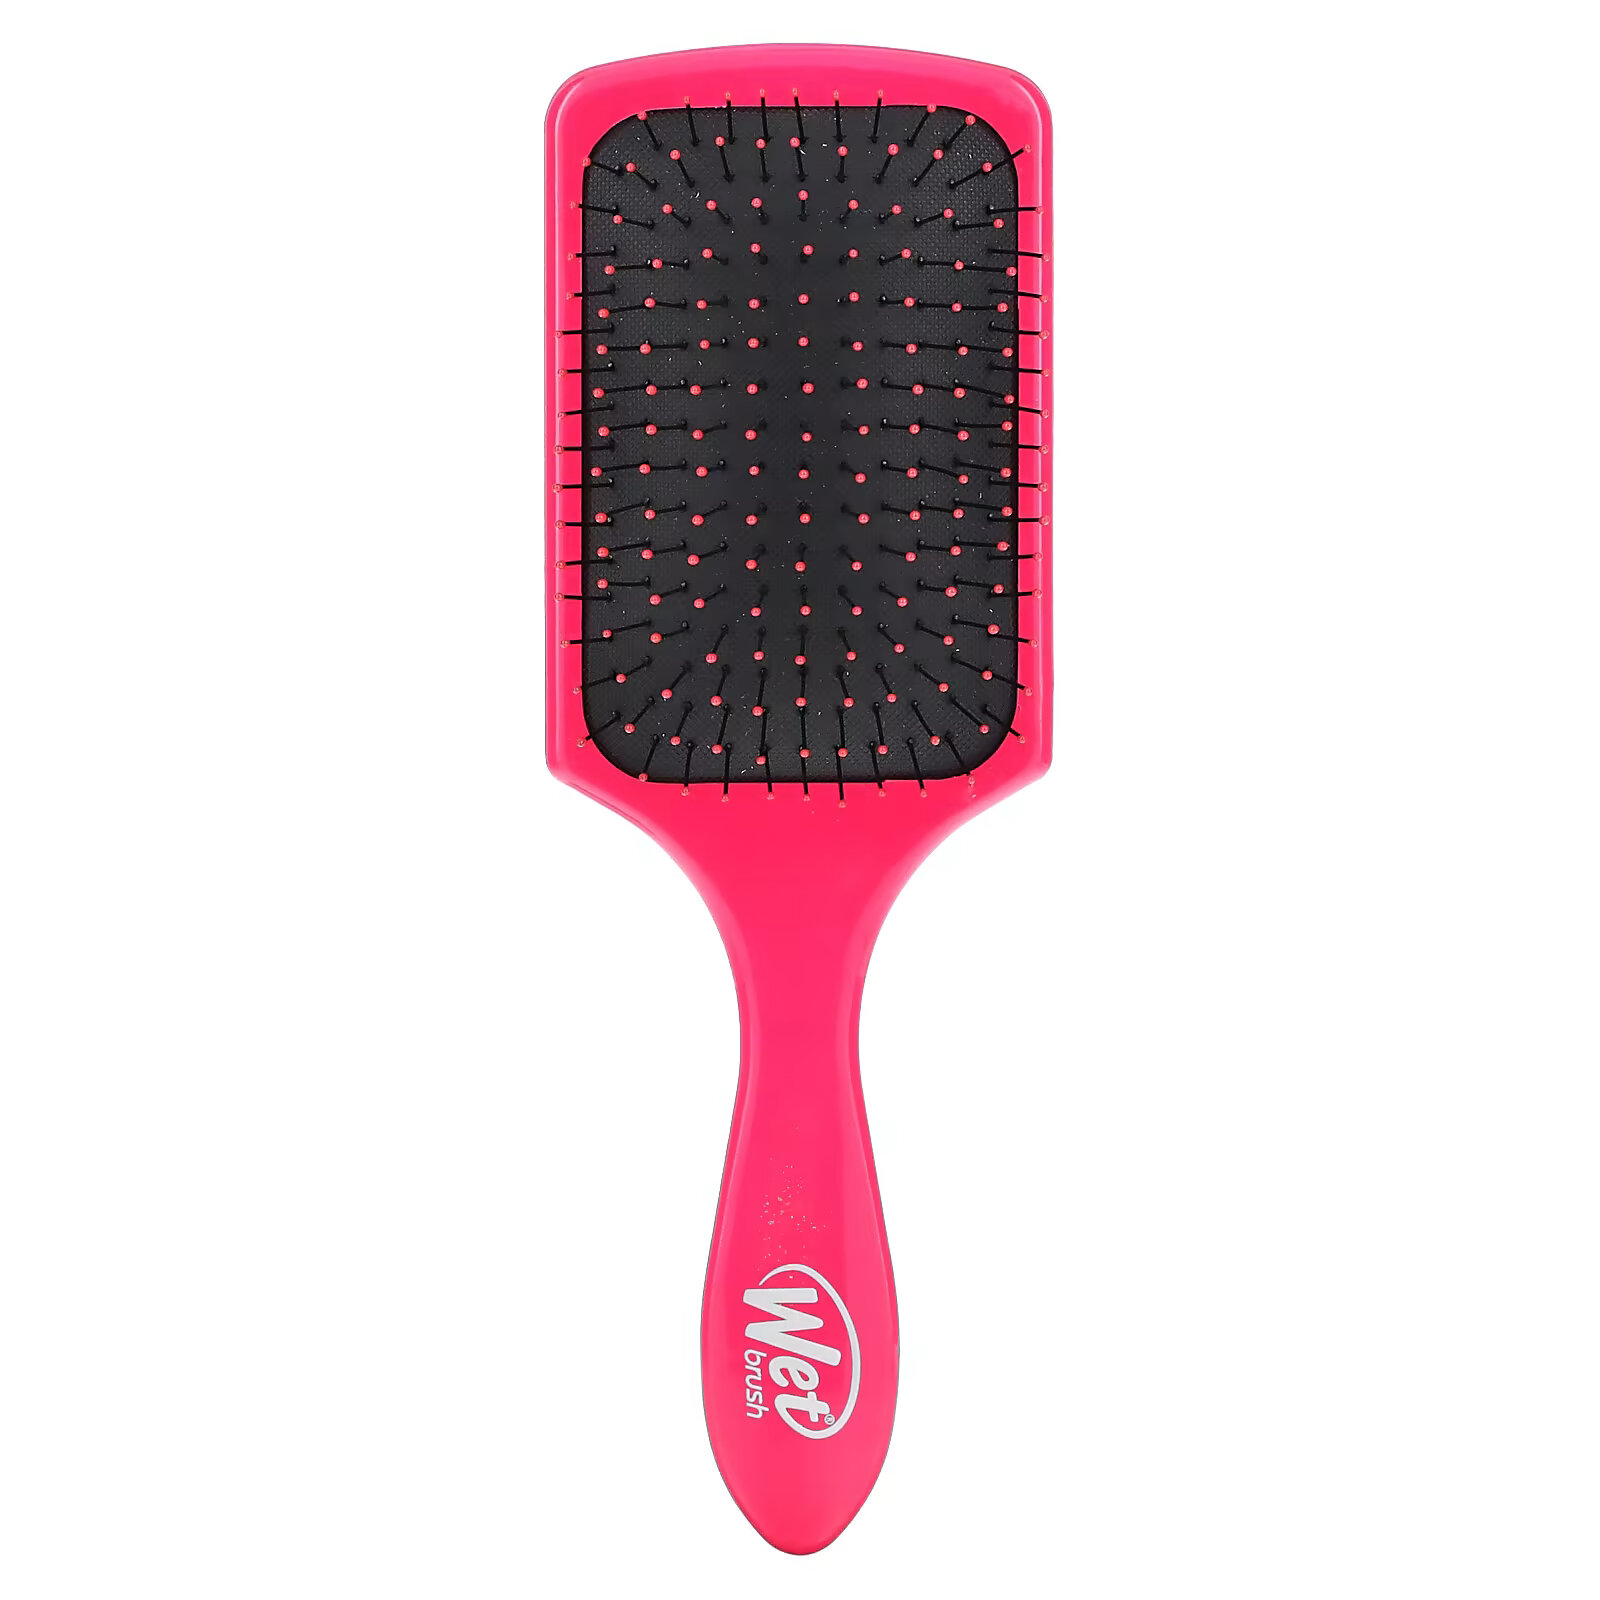 Wet Brush, Распутывающая расческа, розовая, 1 расческа расческа для душа wet brush фиолетовый 1 шт